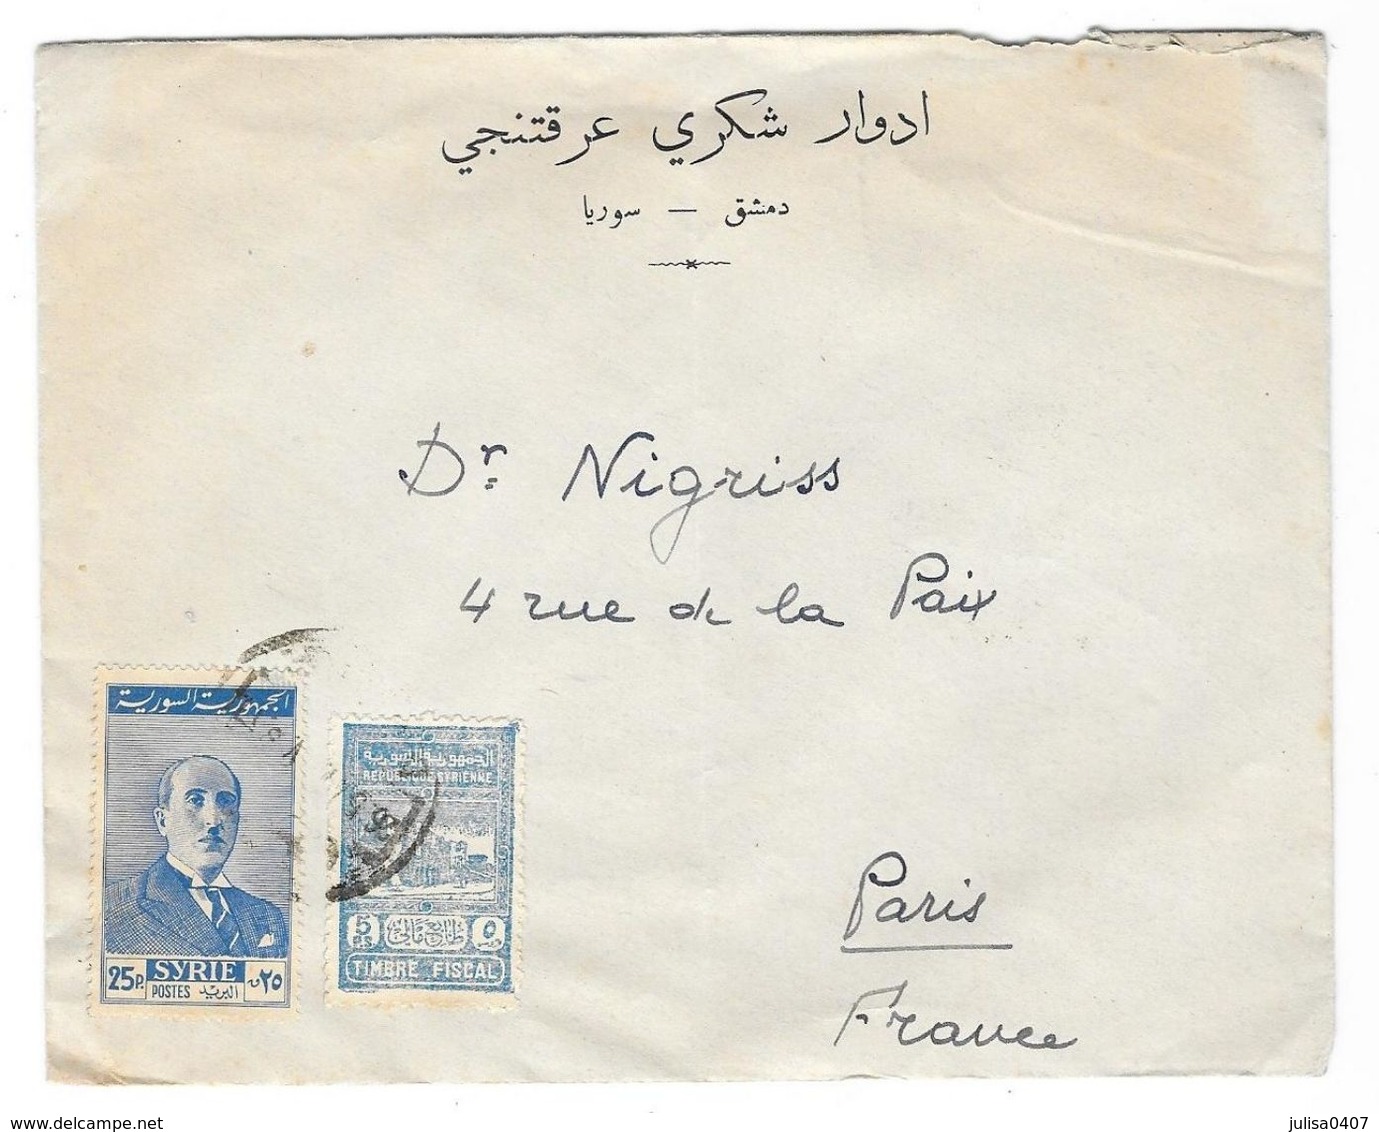 SYRIE  Enveloppe Avec Timbre Fiscal DAMAS à PARIS 1947(?) Publicité Edouard Aractingi - Syrien